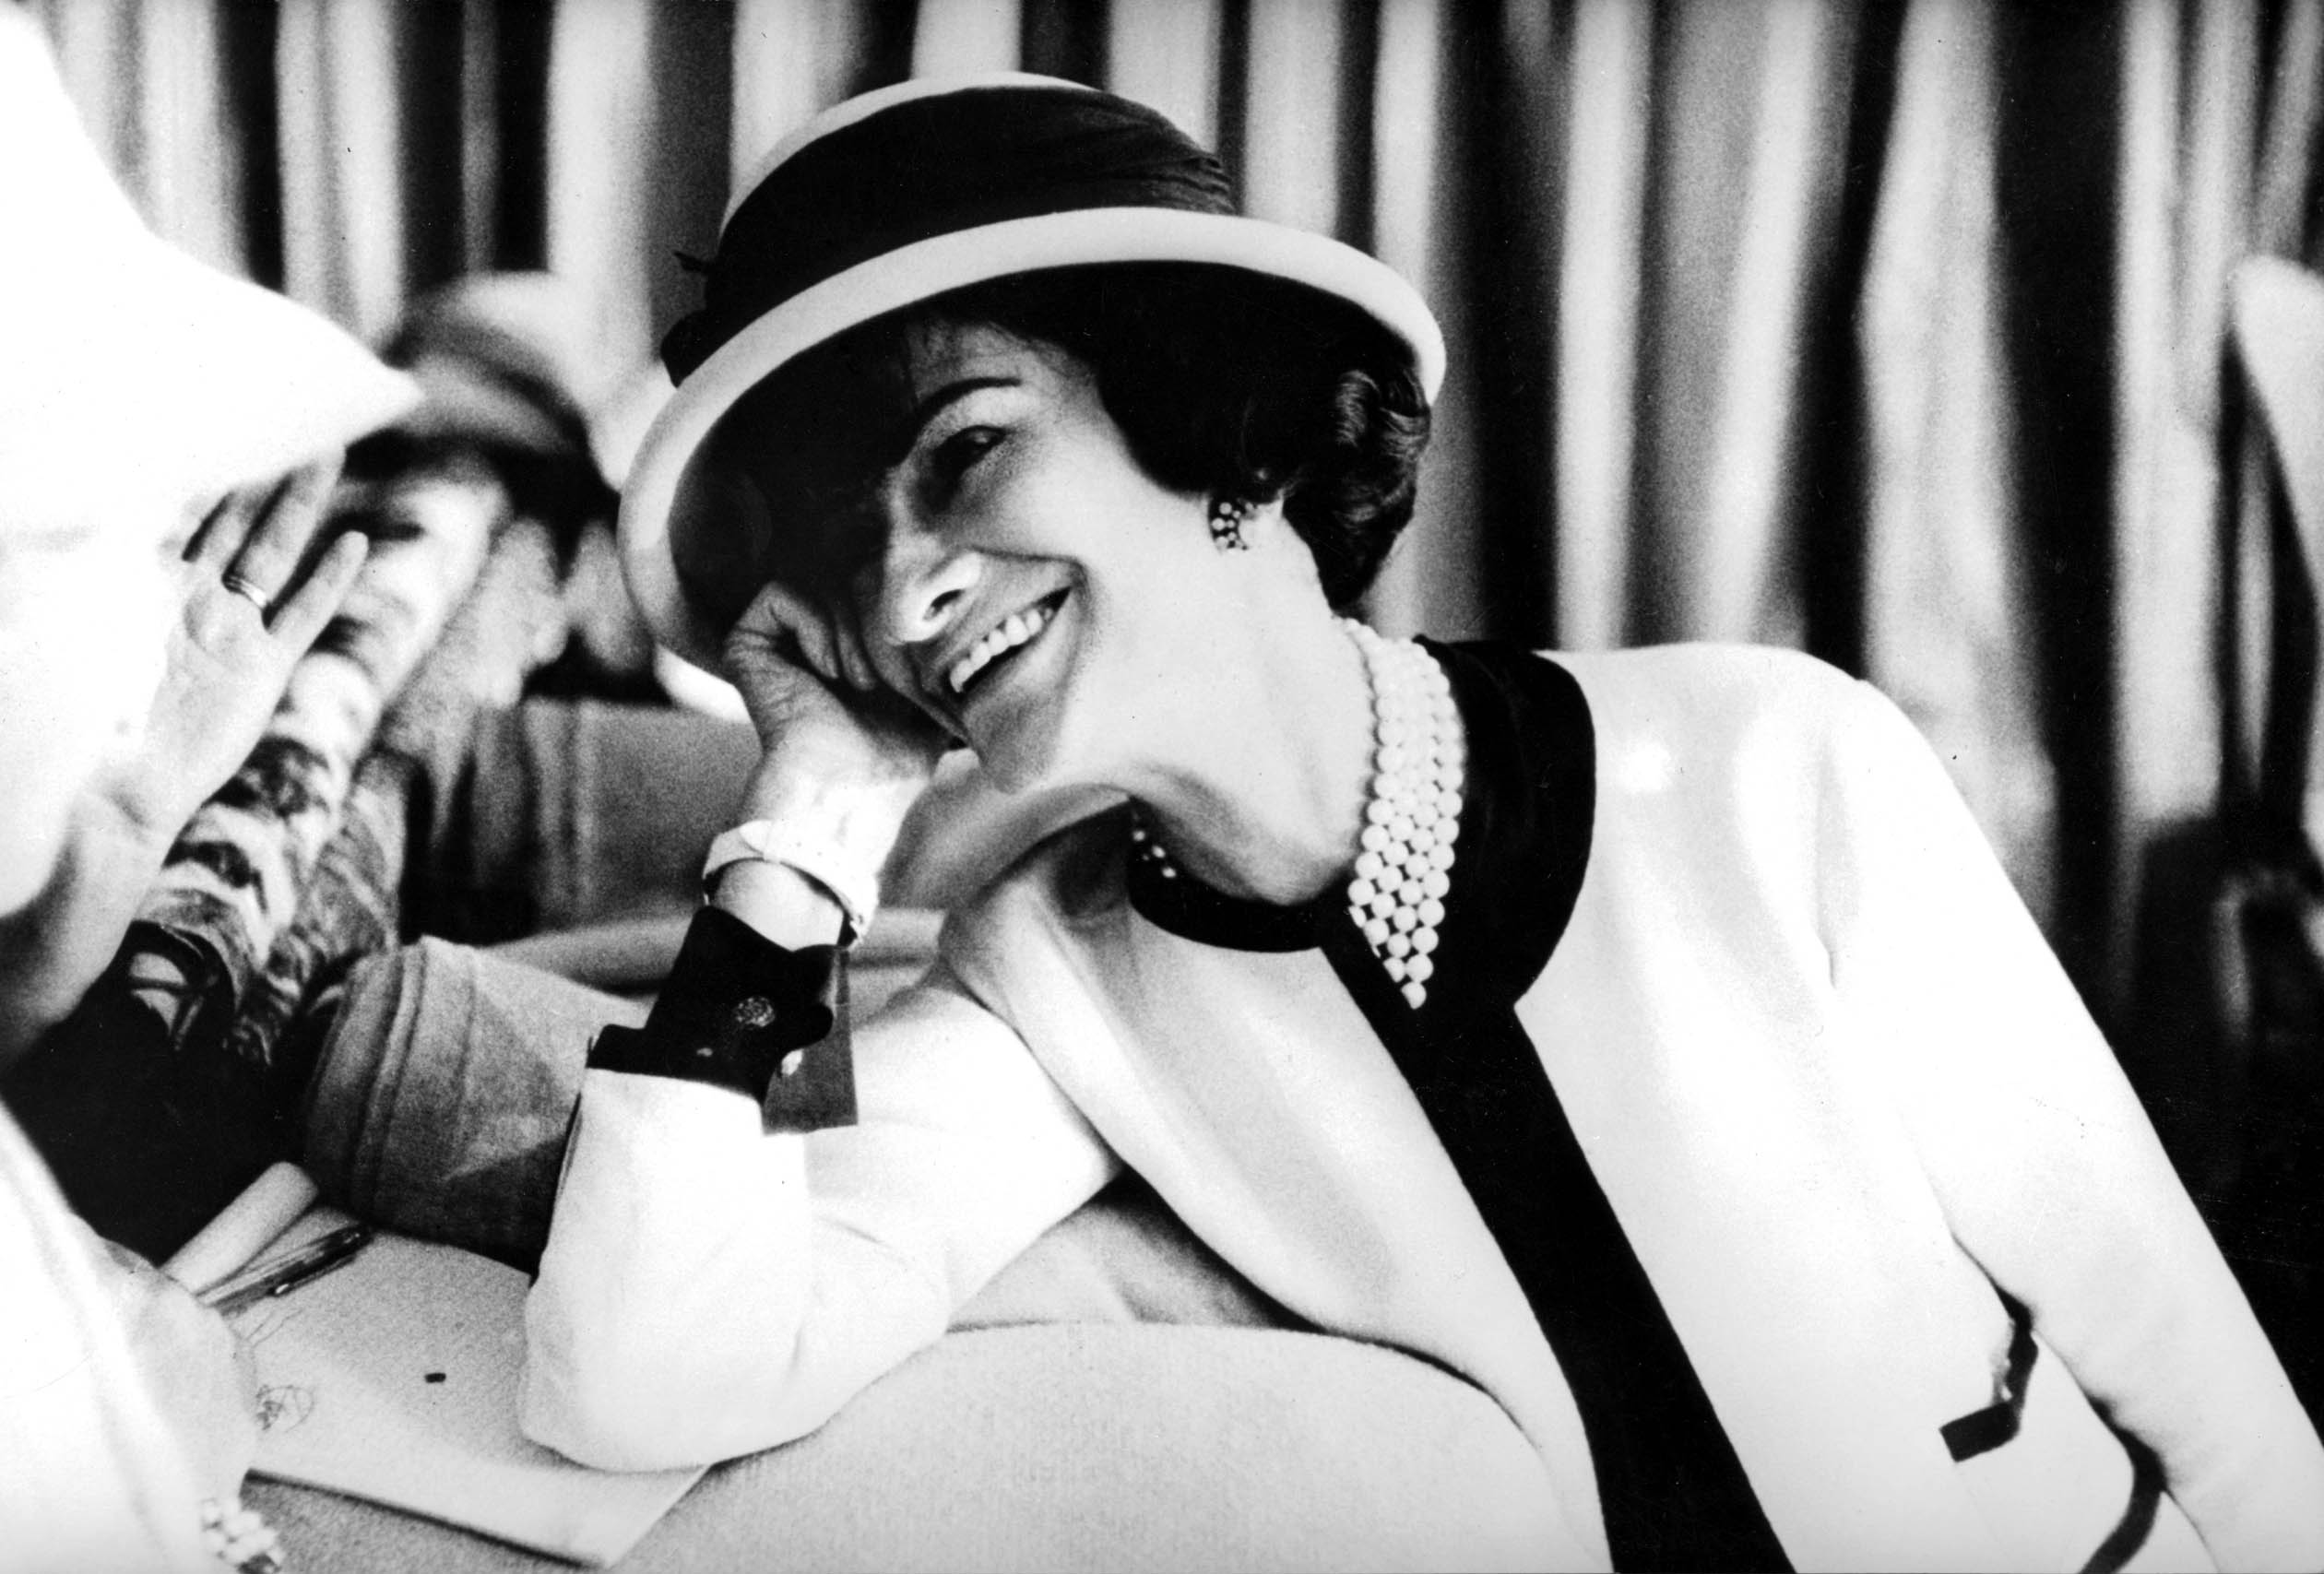 1920s fashion icon Coco Chanel